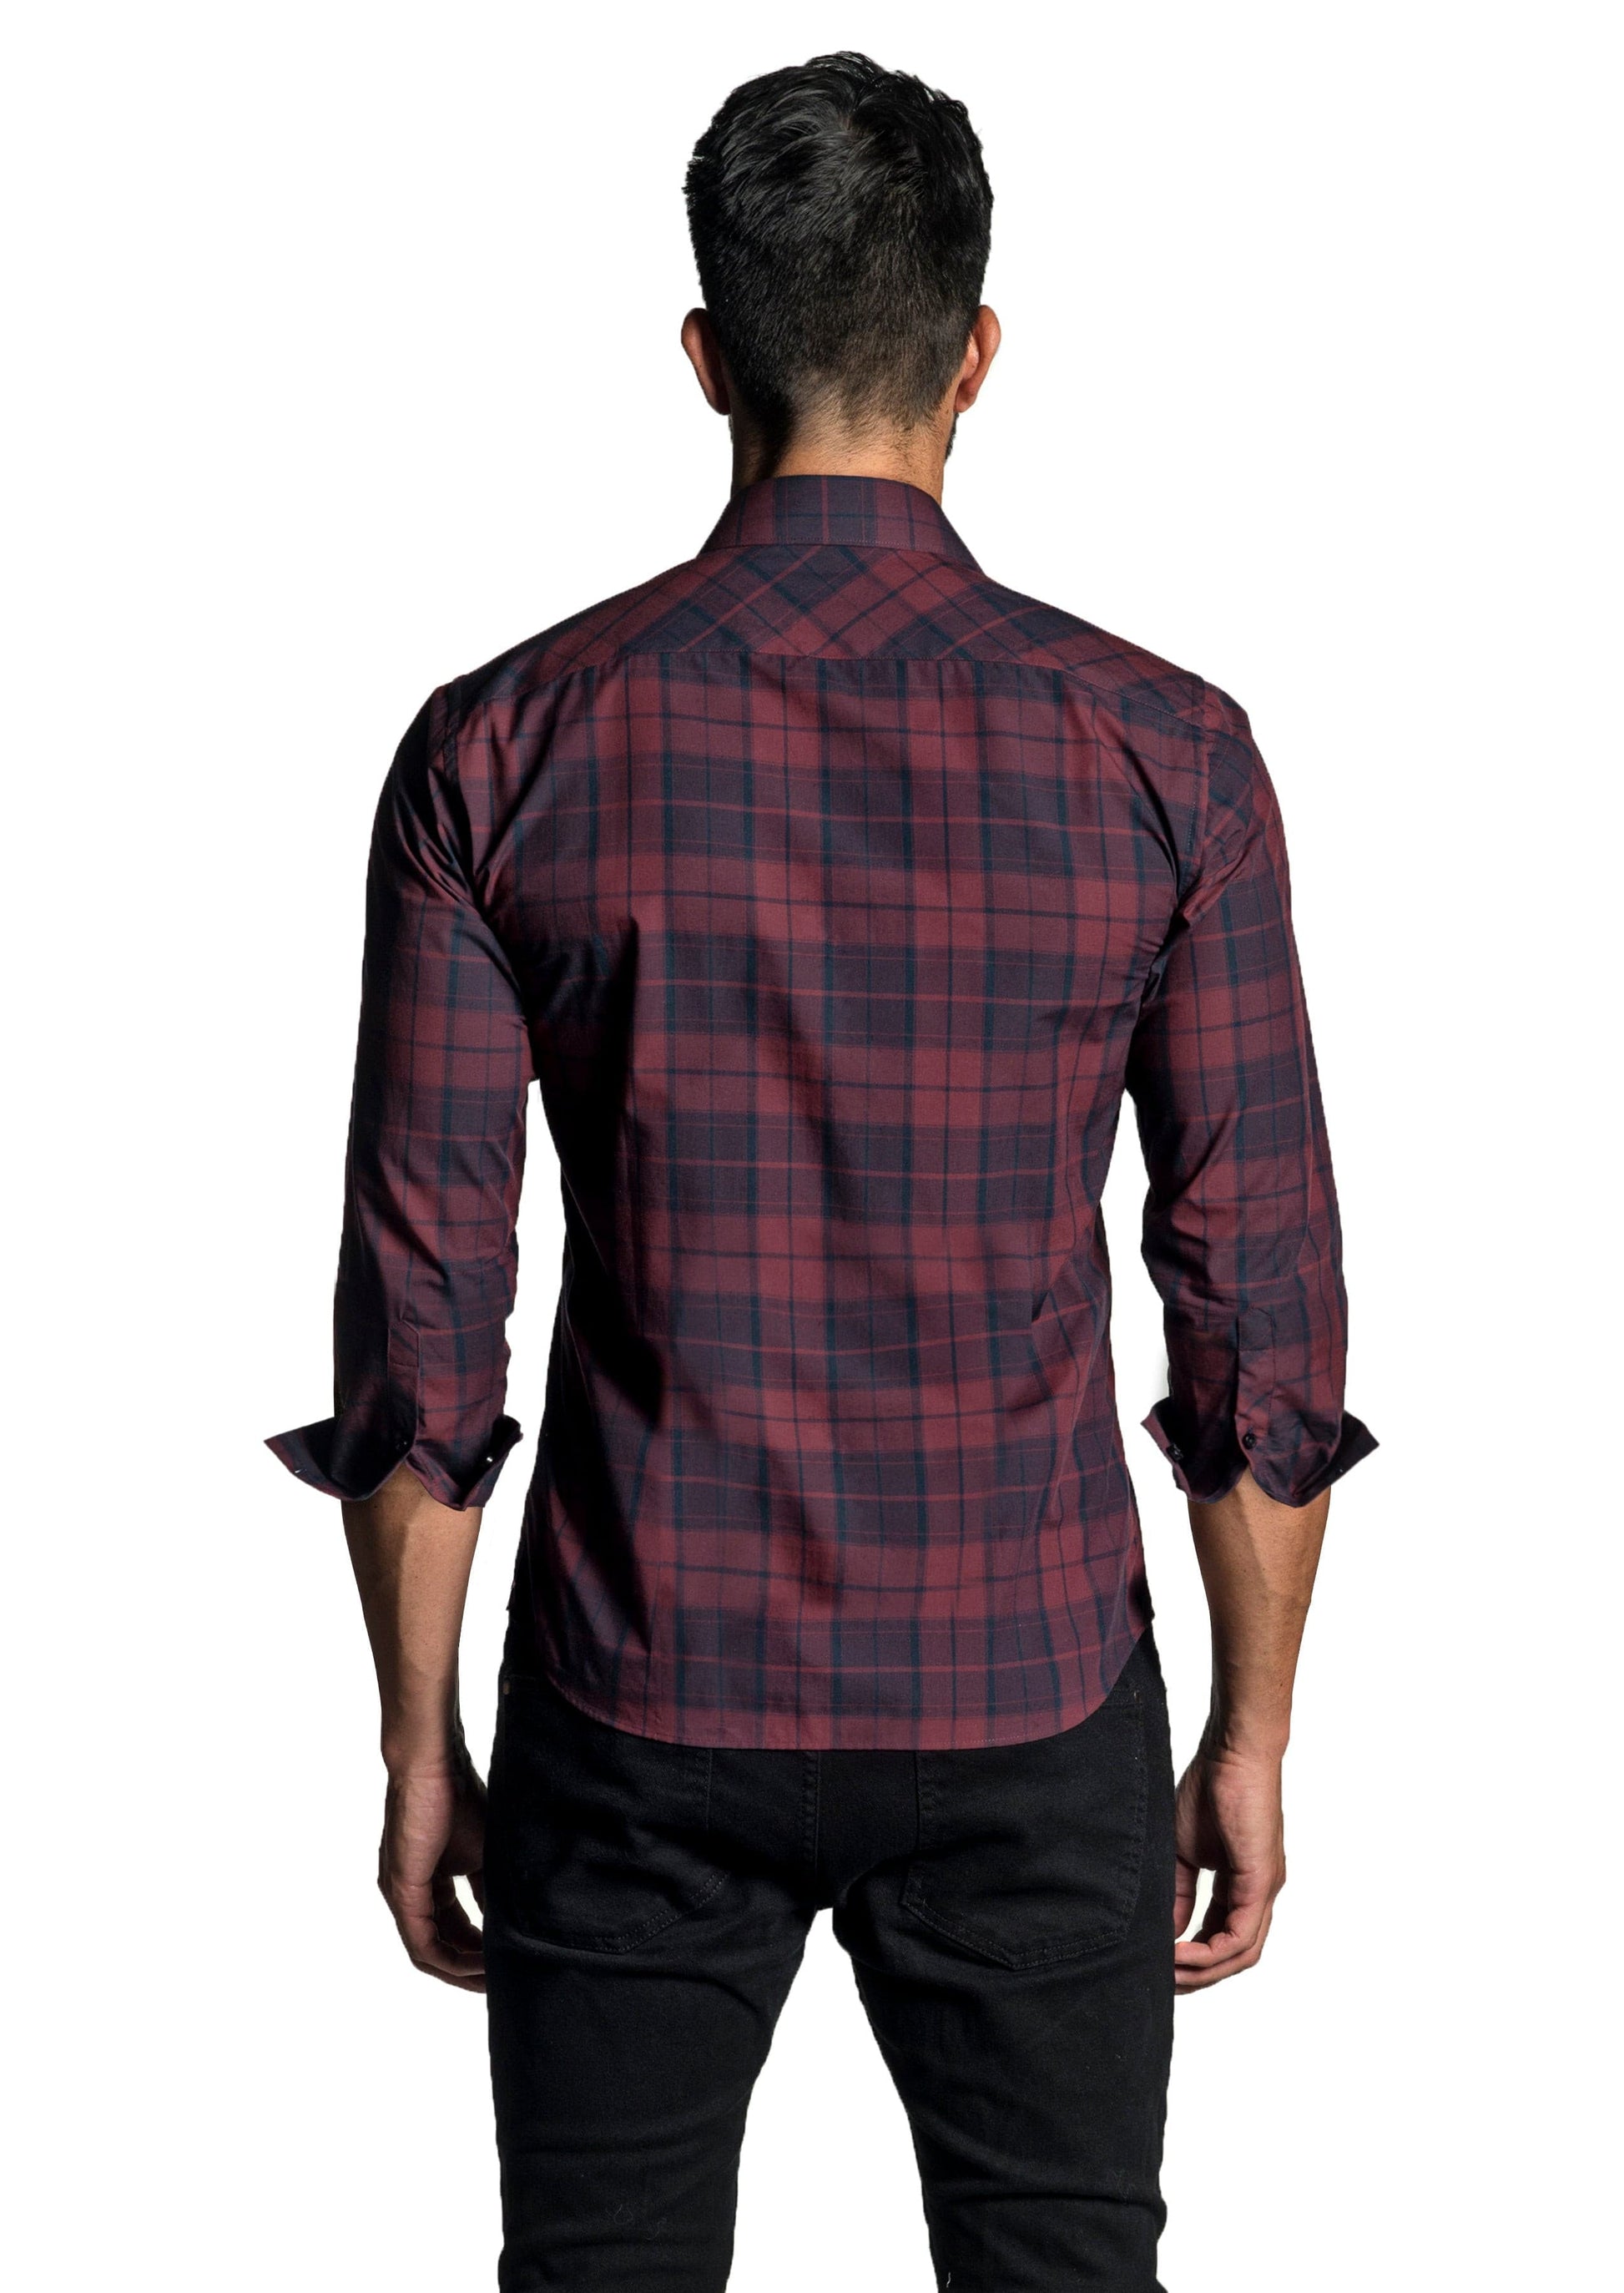 Maroon Long Sleeve Shirt OT-6622 - Back - Jared Lang